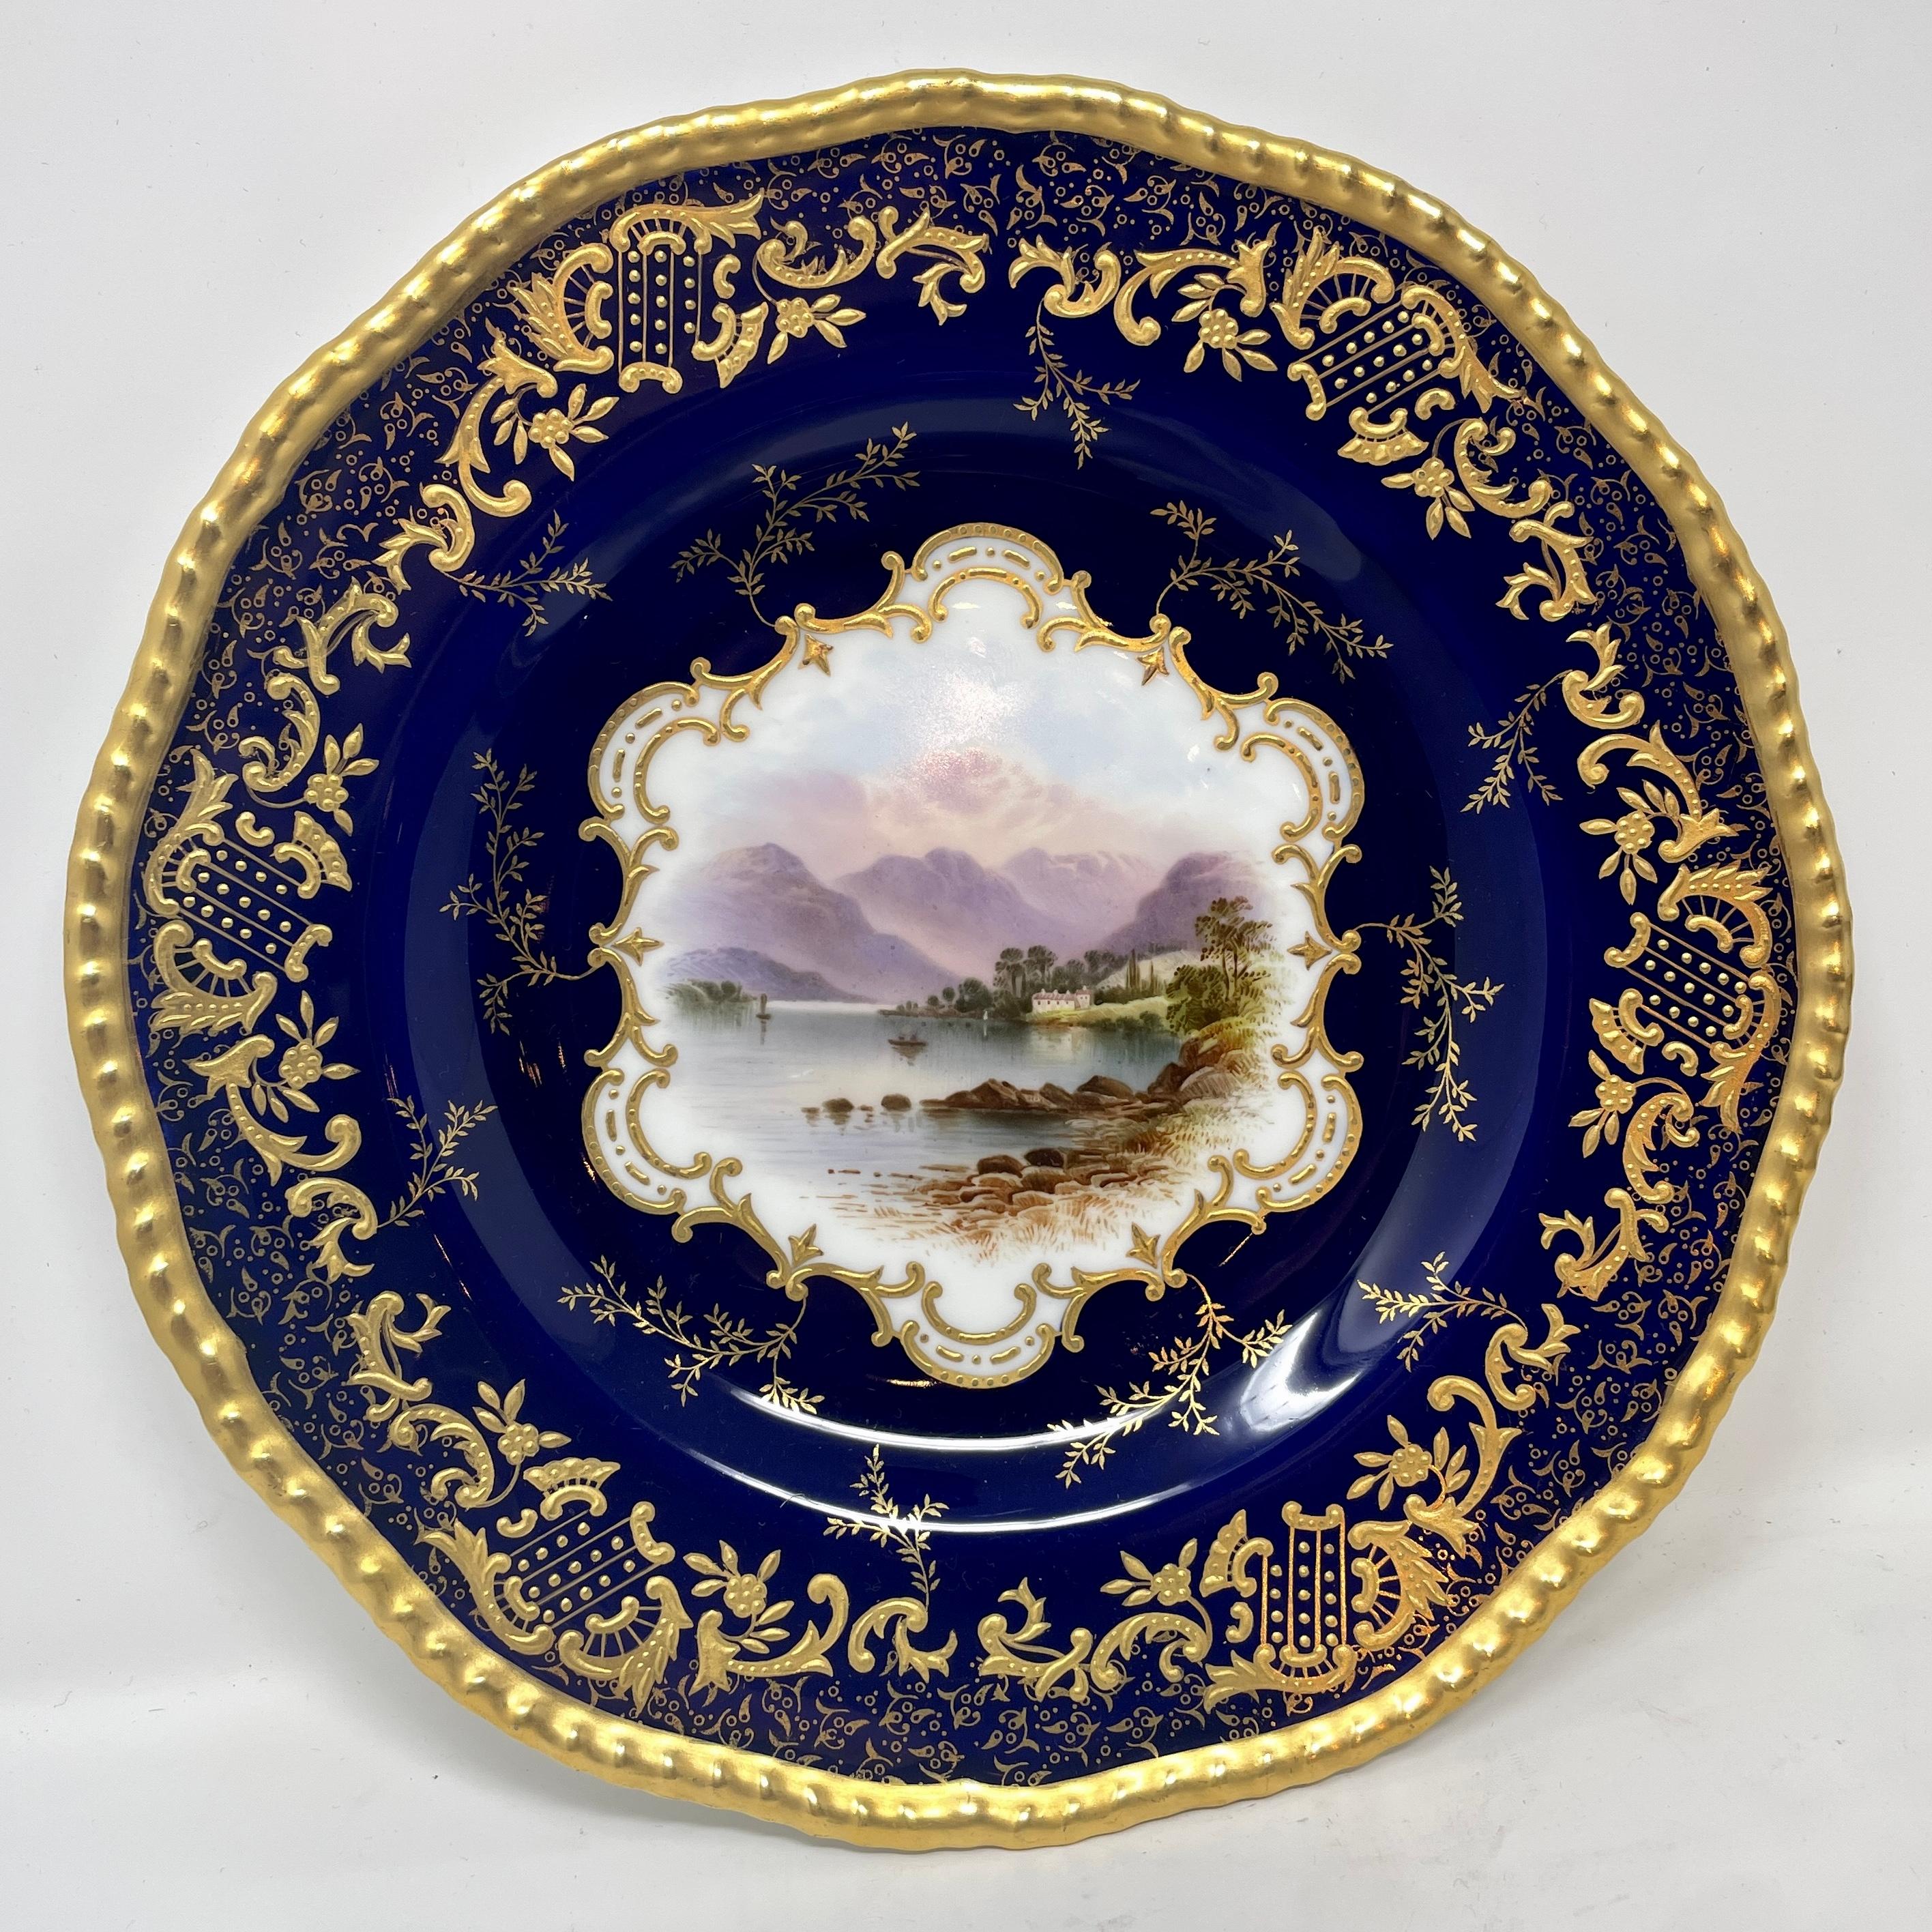 Set of 10 antique English cobalt blue and gold coalport porcelain plates, circa 1900. Each plate features unique center design.